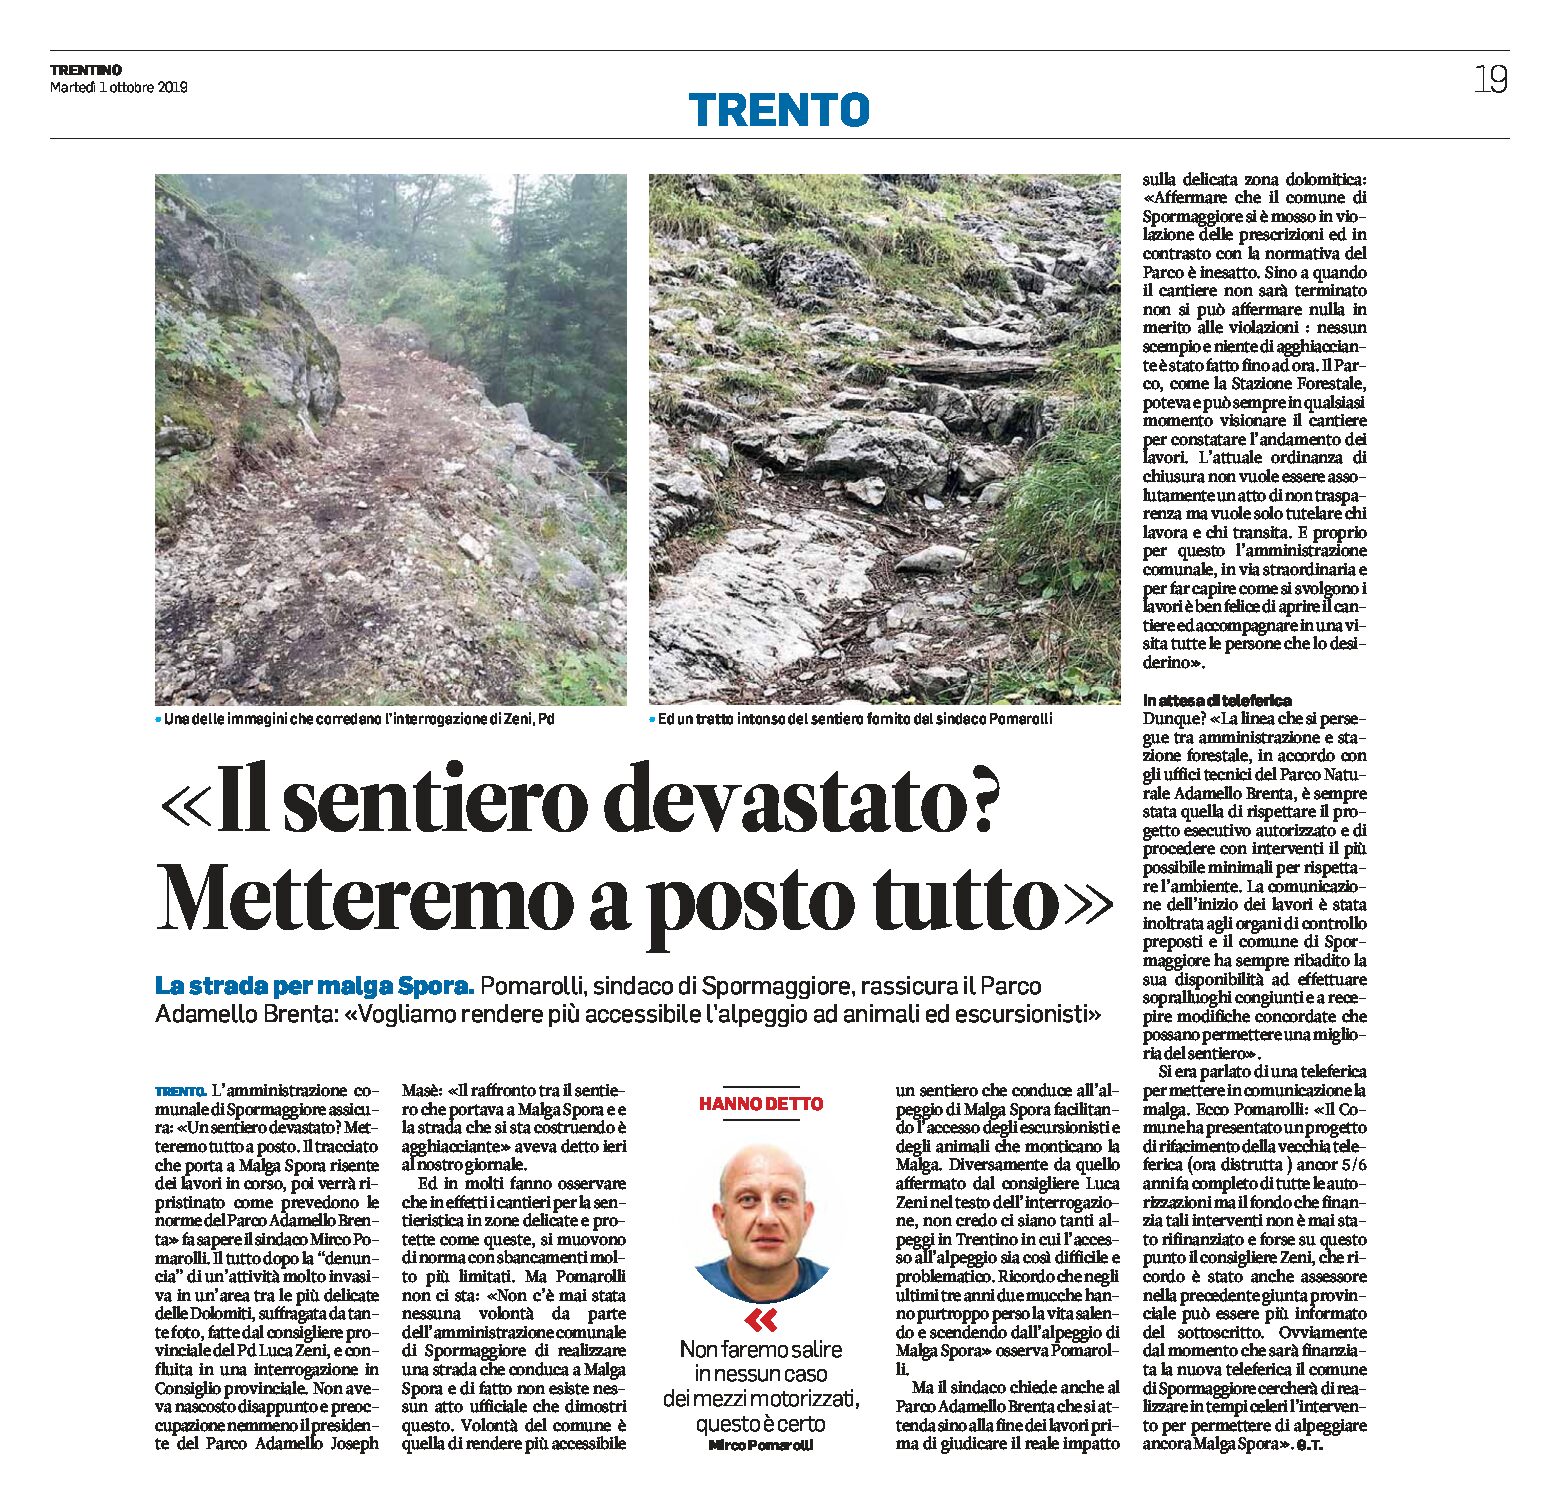 Parco Adamello Brenta: il sindaco di Spormaggiore “sentiero devastato? Metteremo a posto tutto”